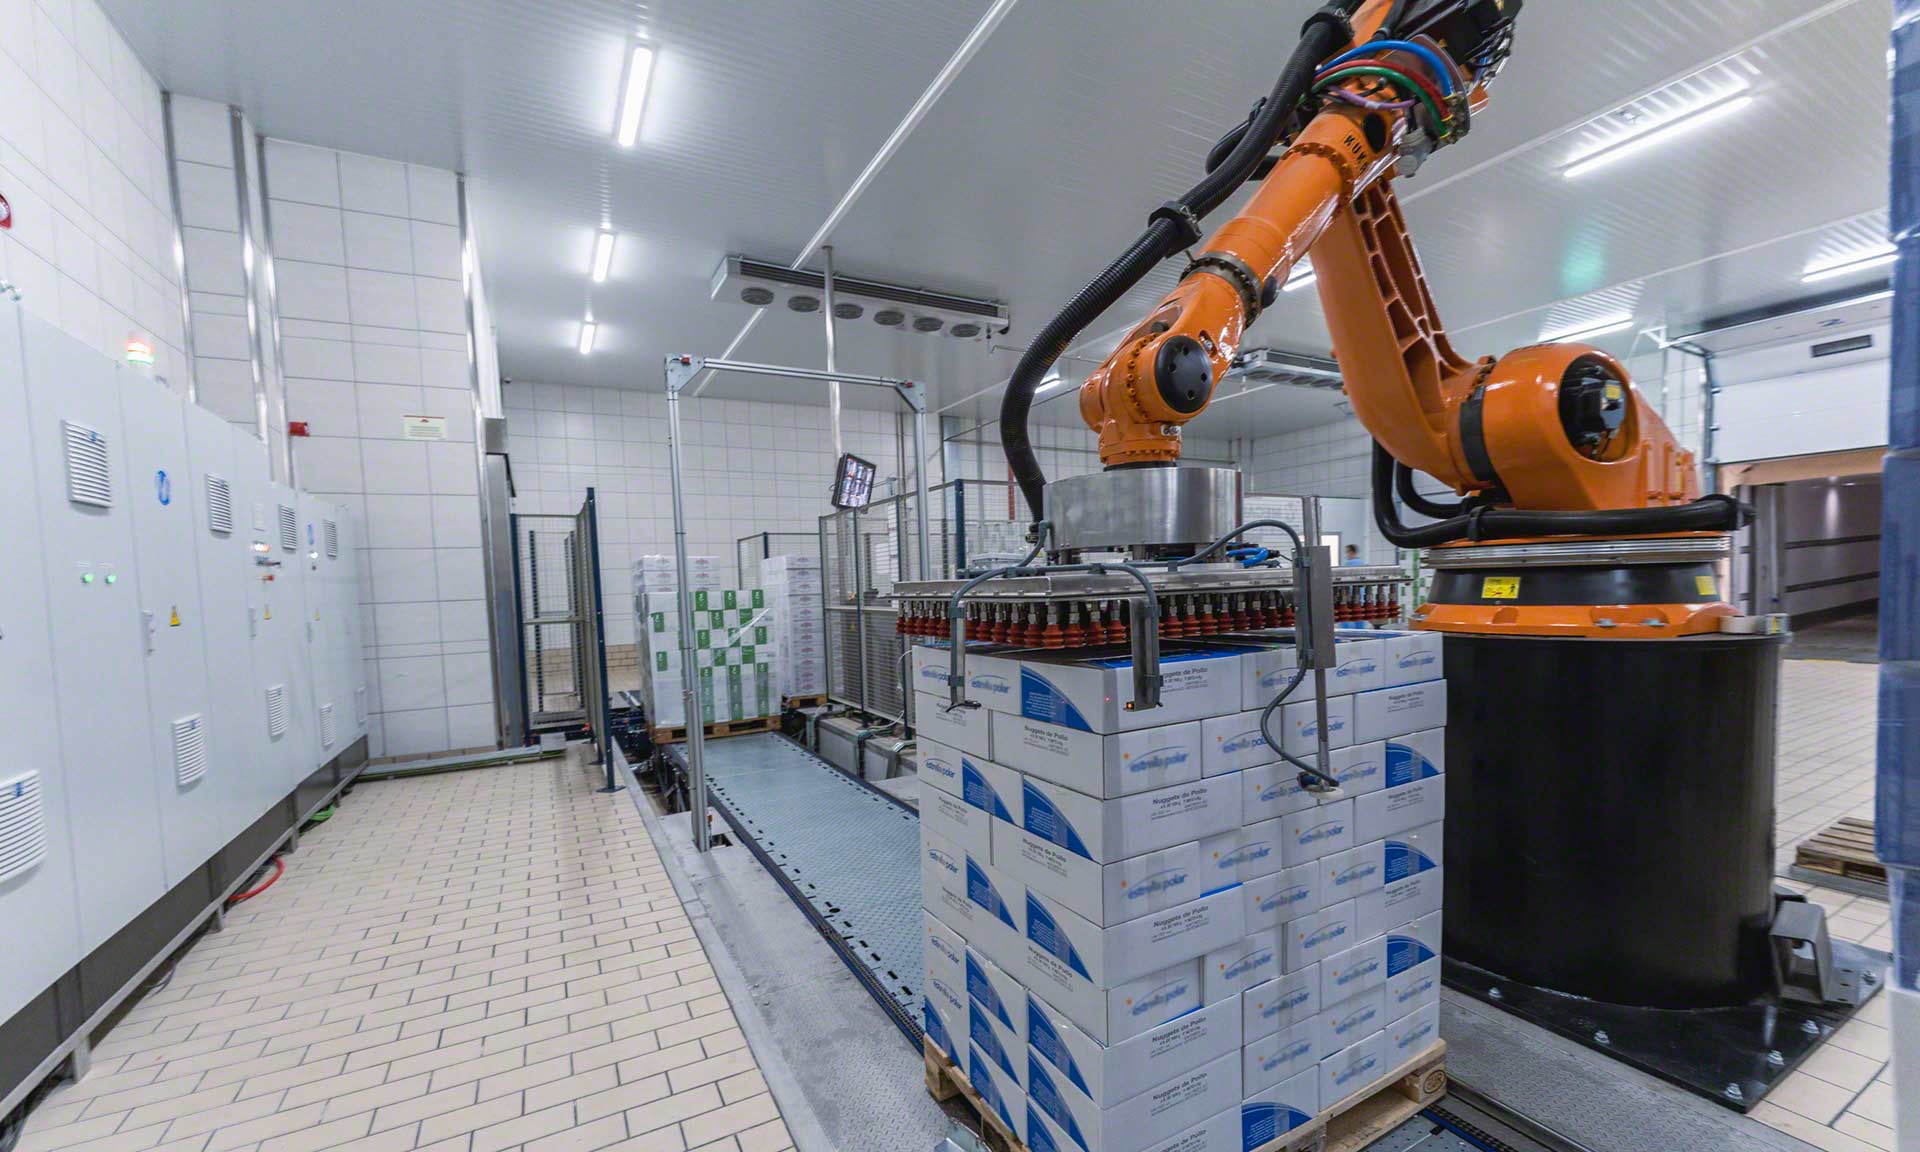 Los robots de almacén aportan velocidad y eficiencia a las tareas de almacenaje y preparación de pedidos